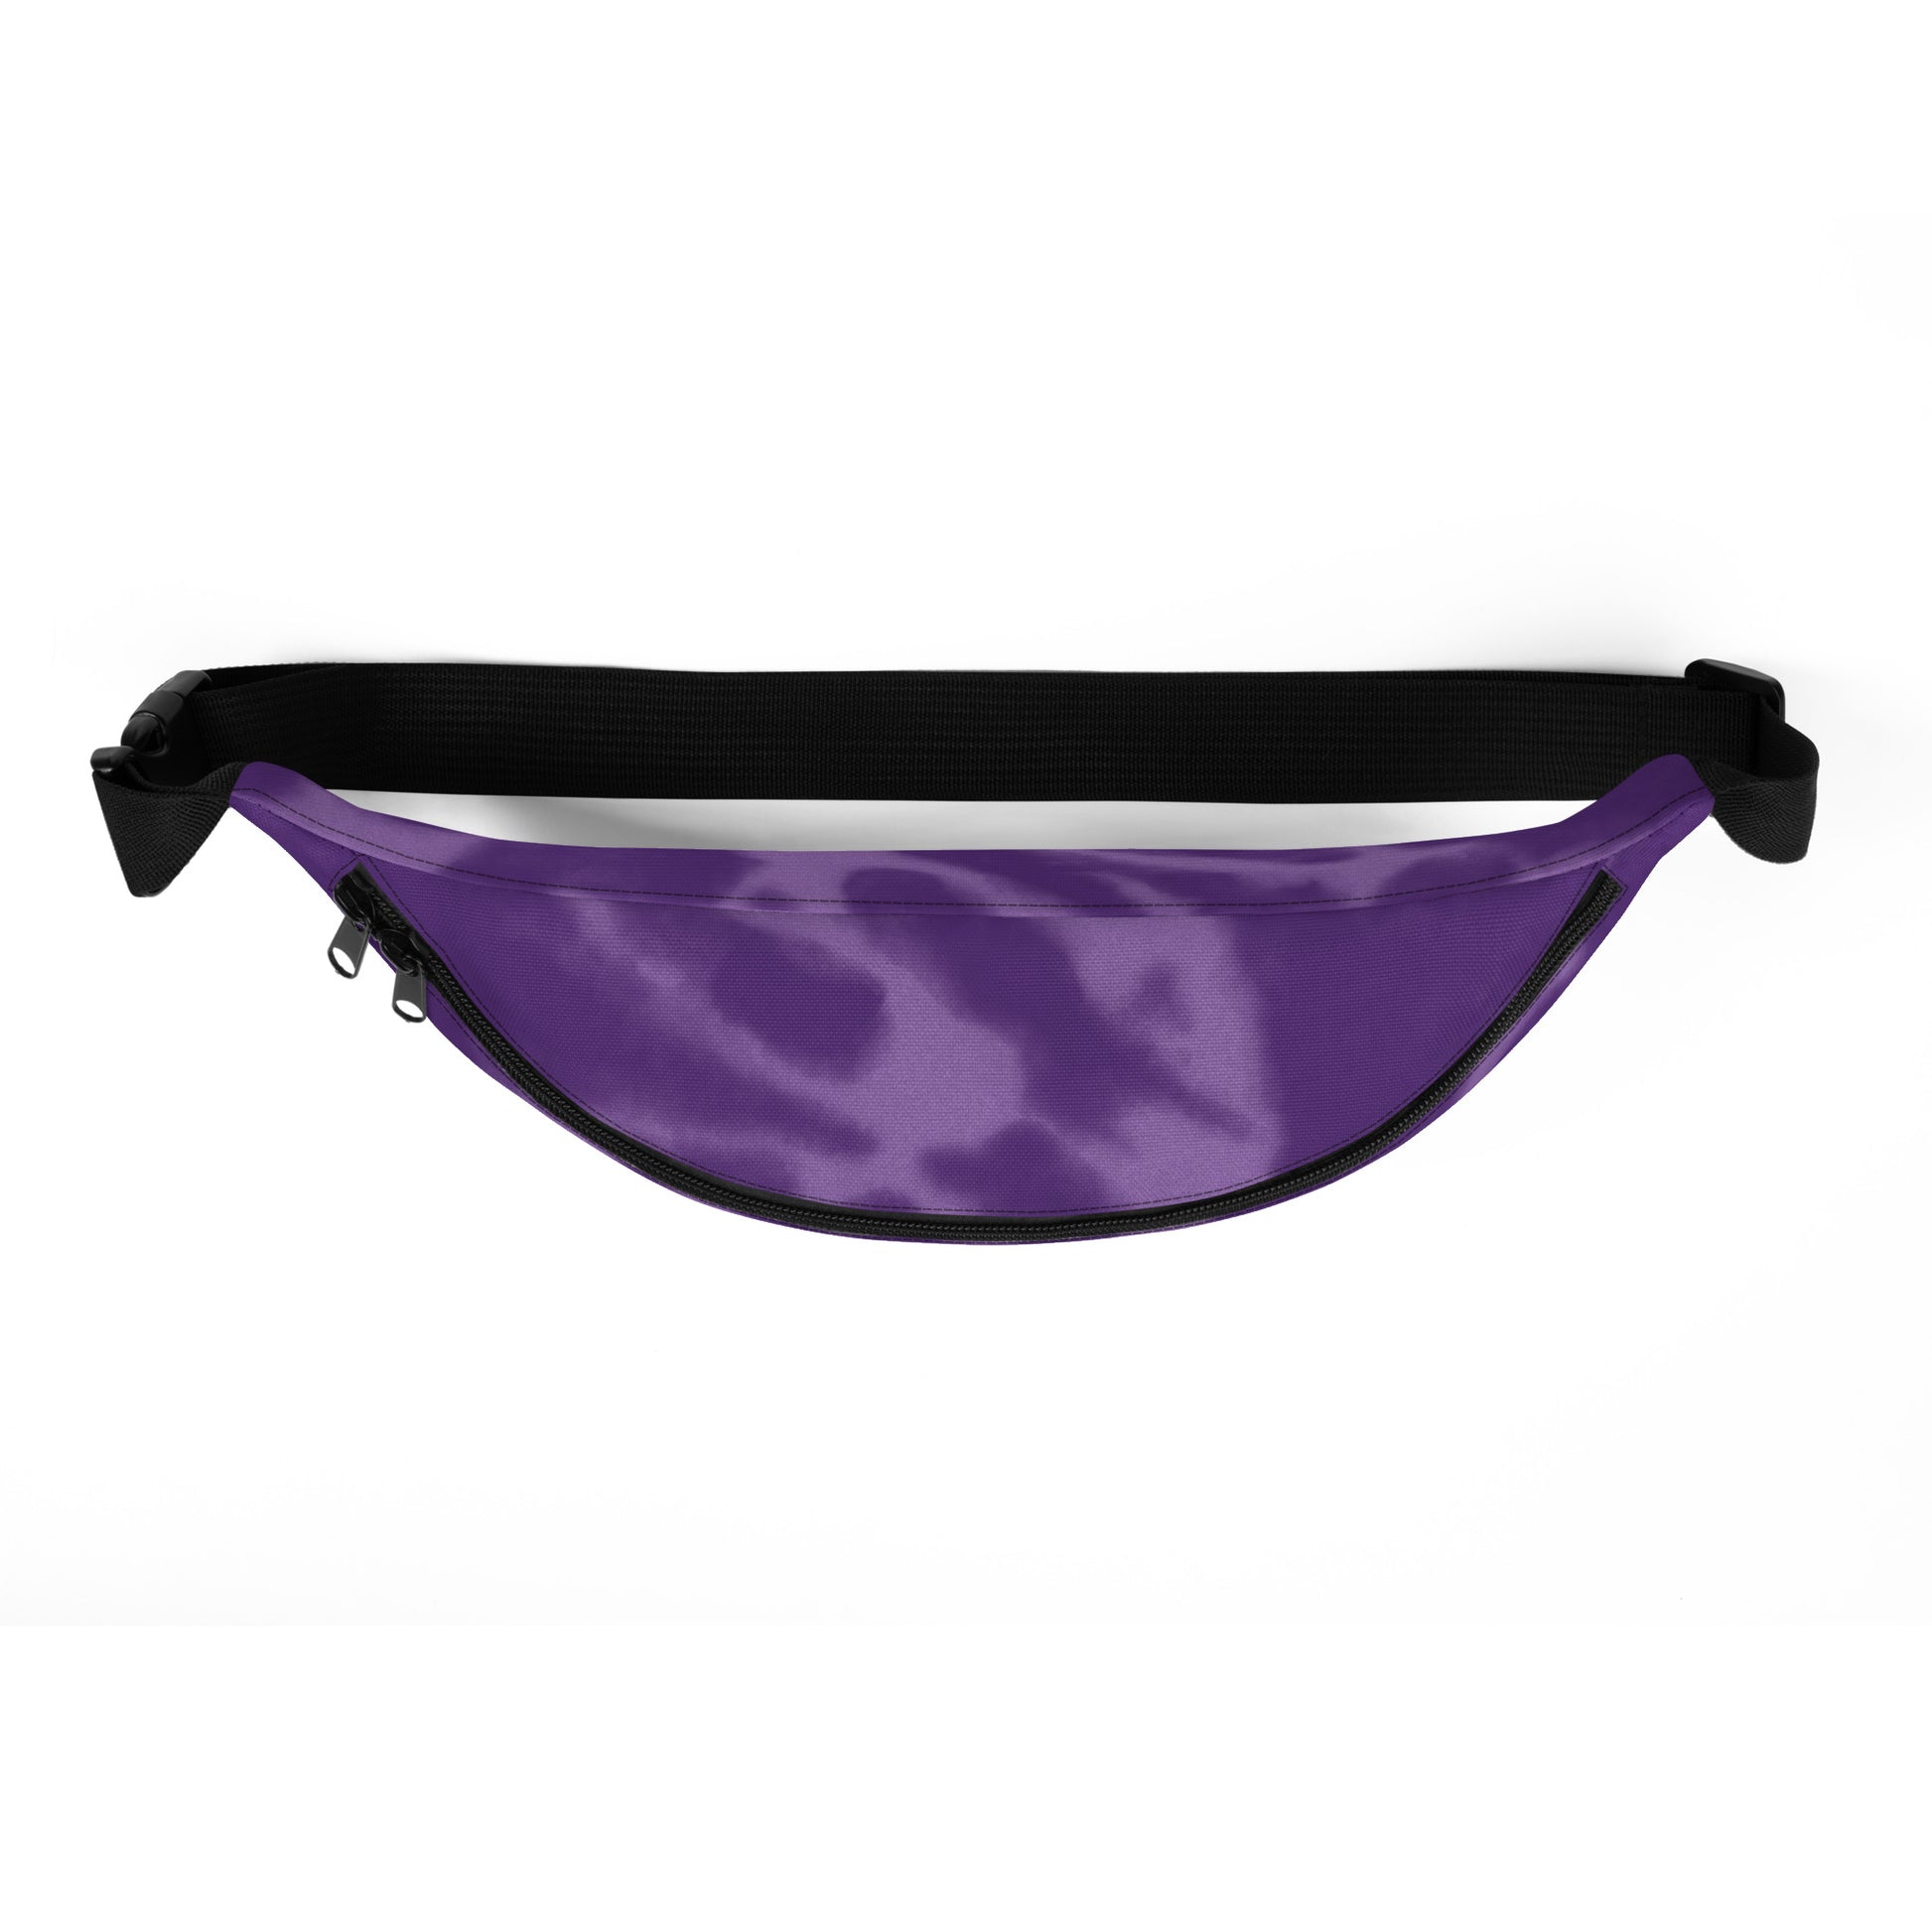 Travel Gift Fanny Pack - Purple Tie-Dye • CVG Cincinnati • YHM Designs - Image 08